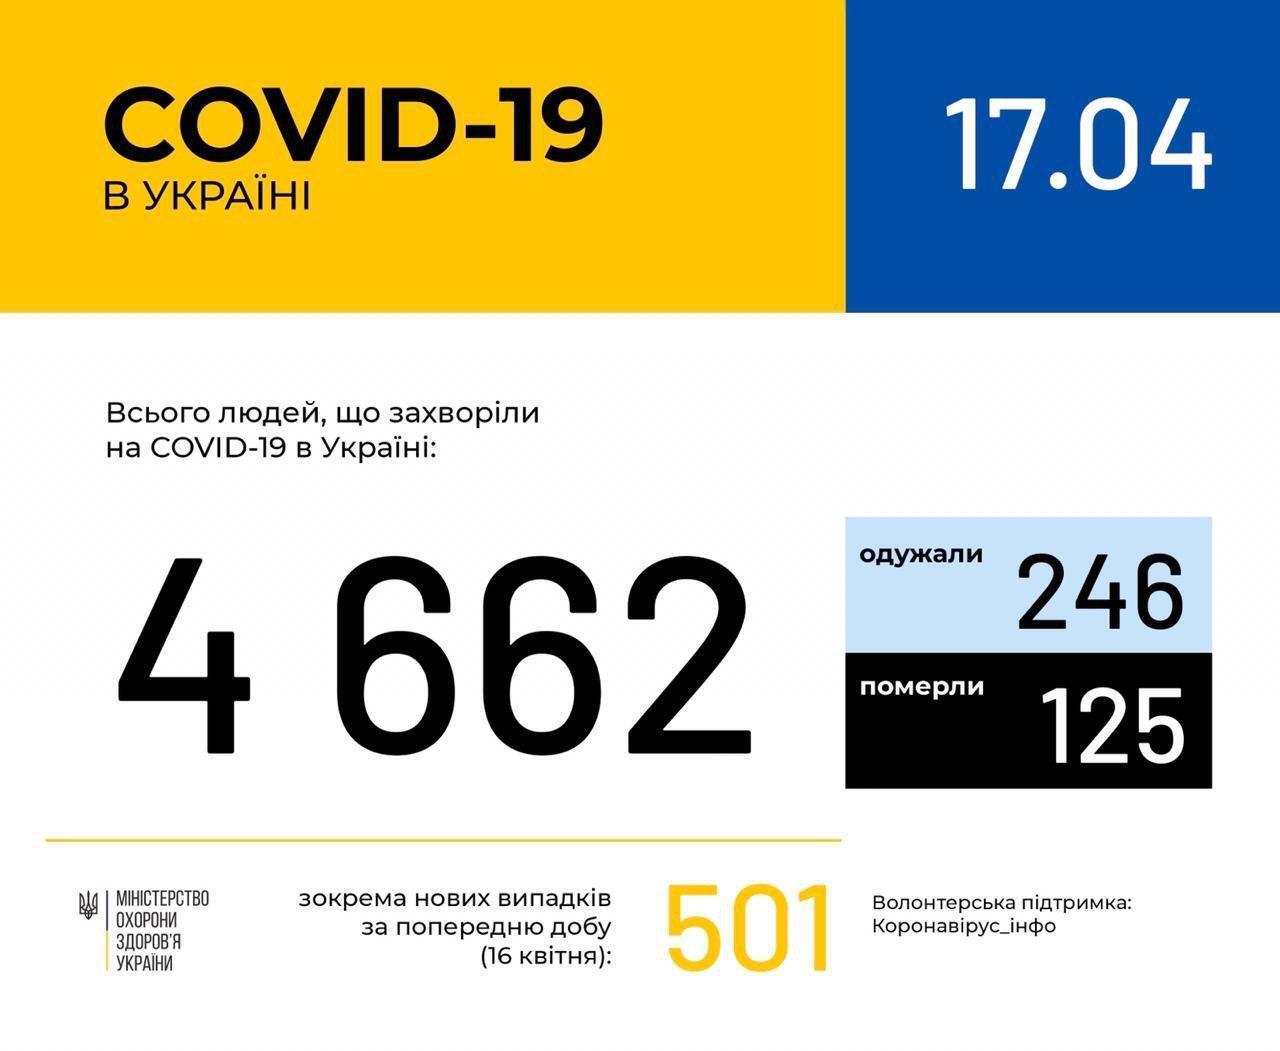 Коронавірус знову розгорівся в Україні та світі: статистика на 17 квітня. Постійно оновлюється